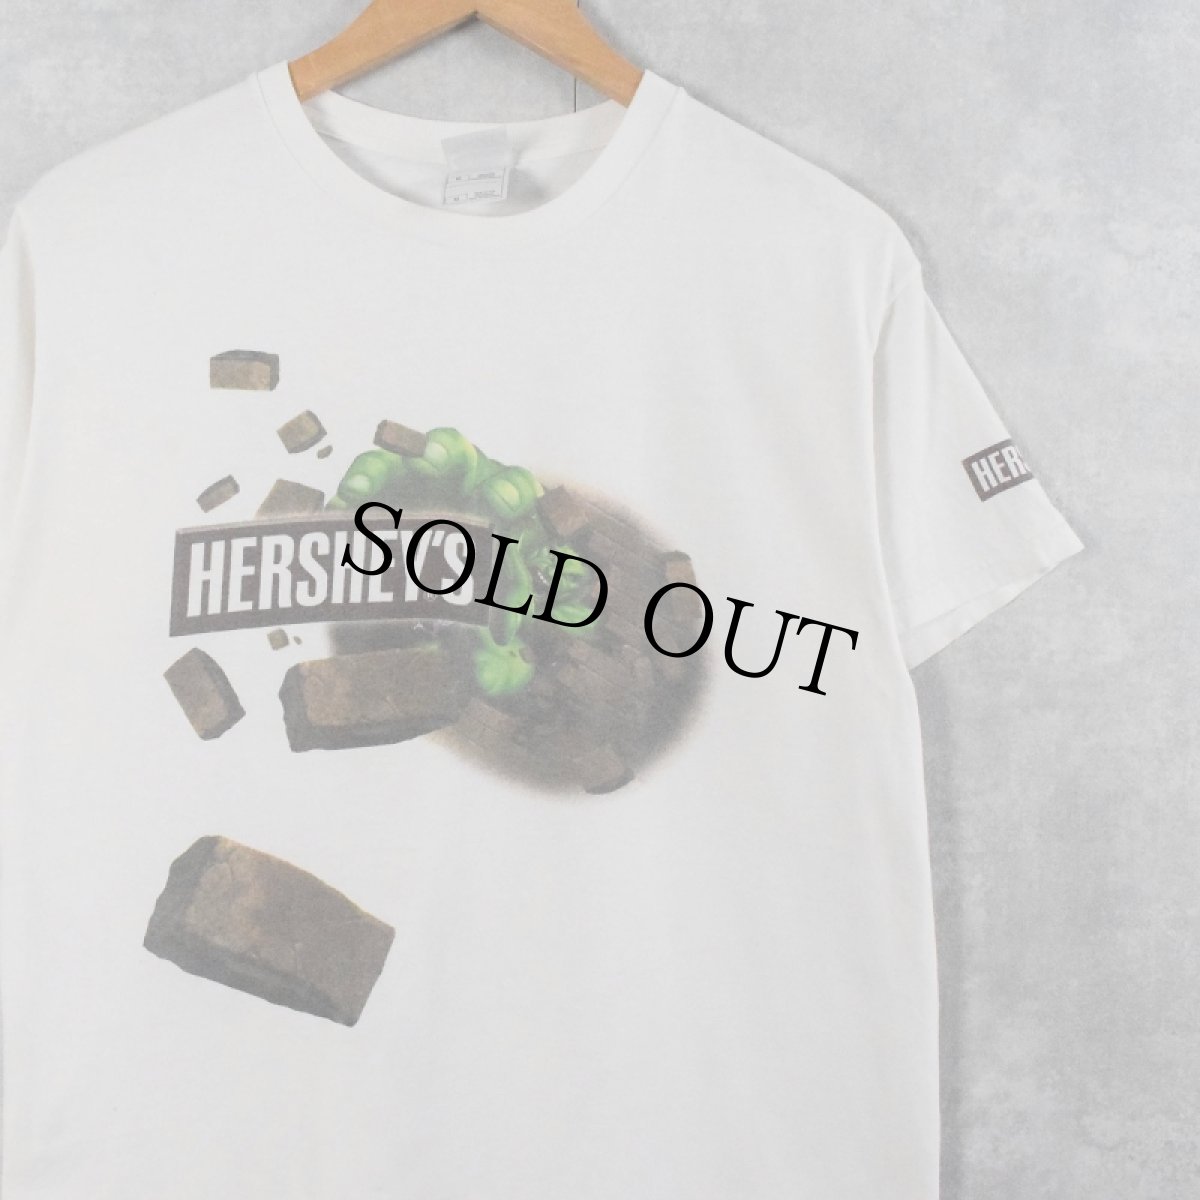 画像1: HERSHEY'S × HULK お菓子企業プリントTシャツ M (1)